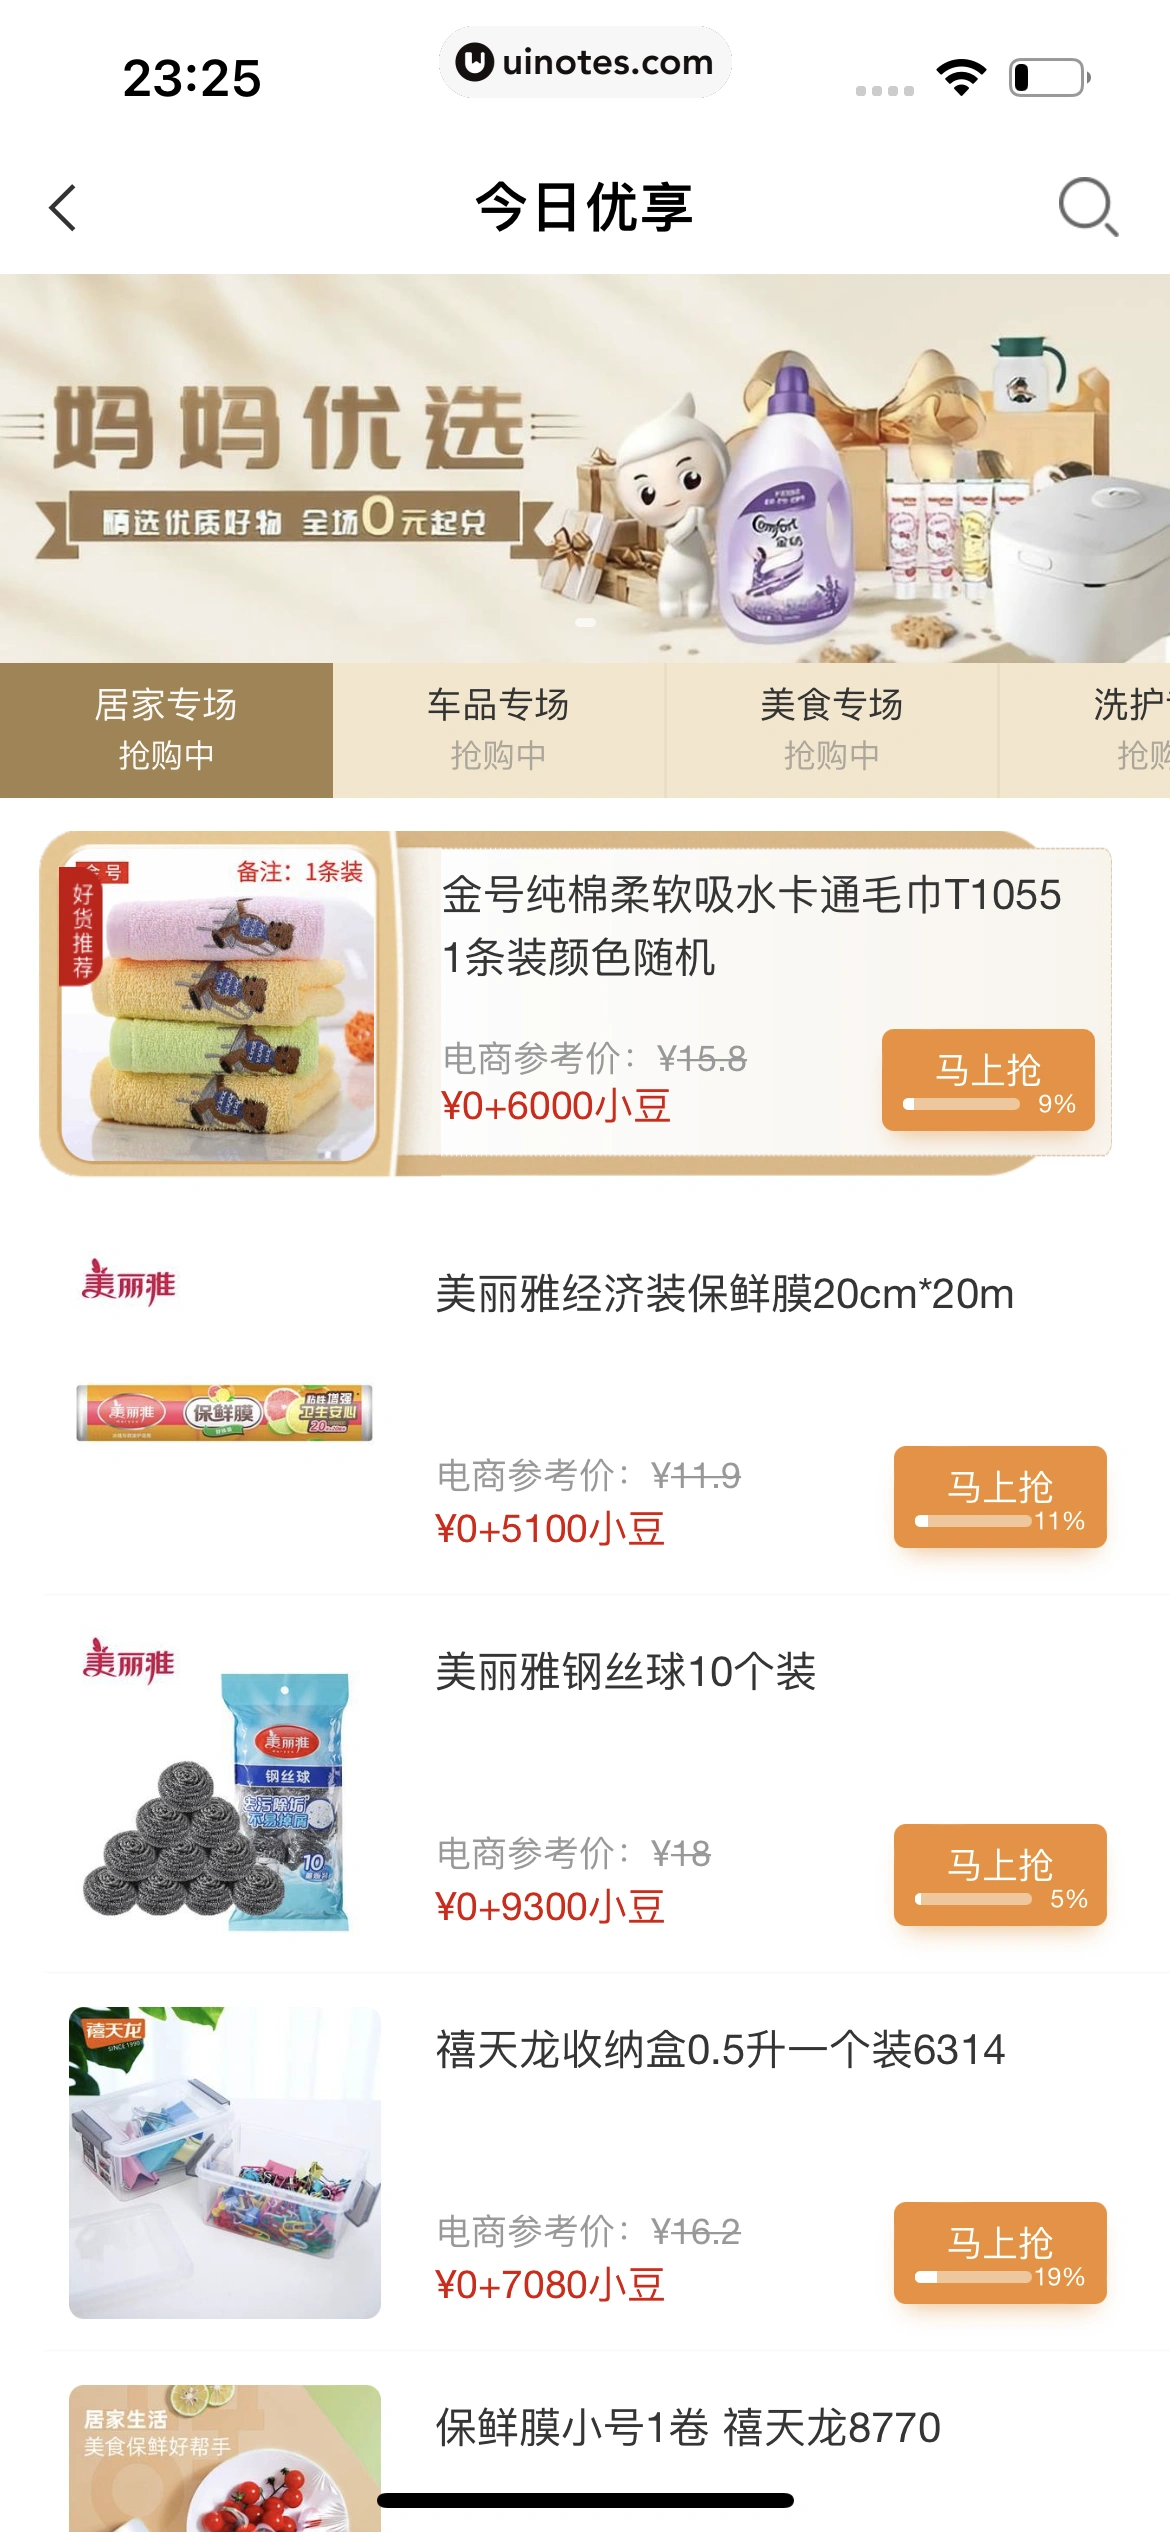 中国农业银行 App 截图 033 - UI Notes